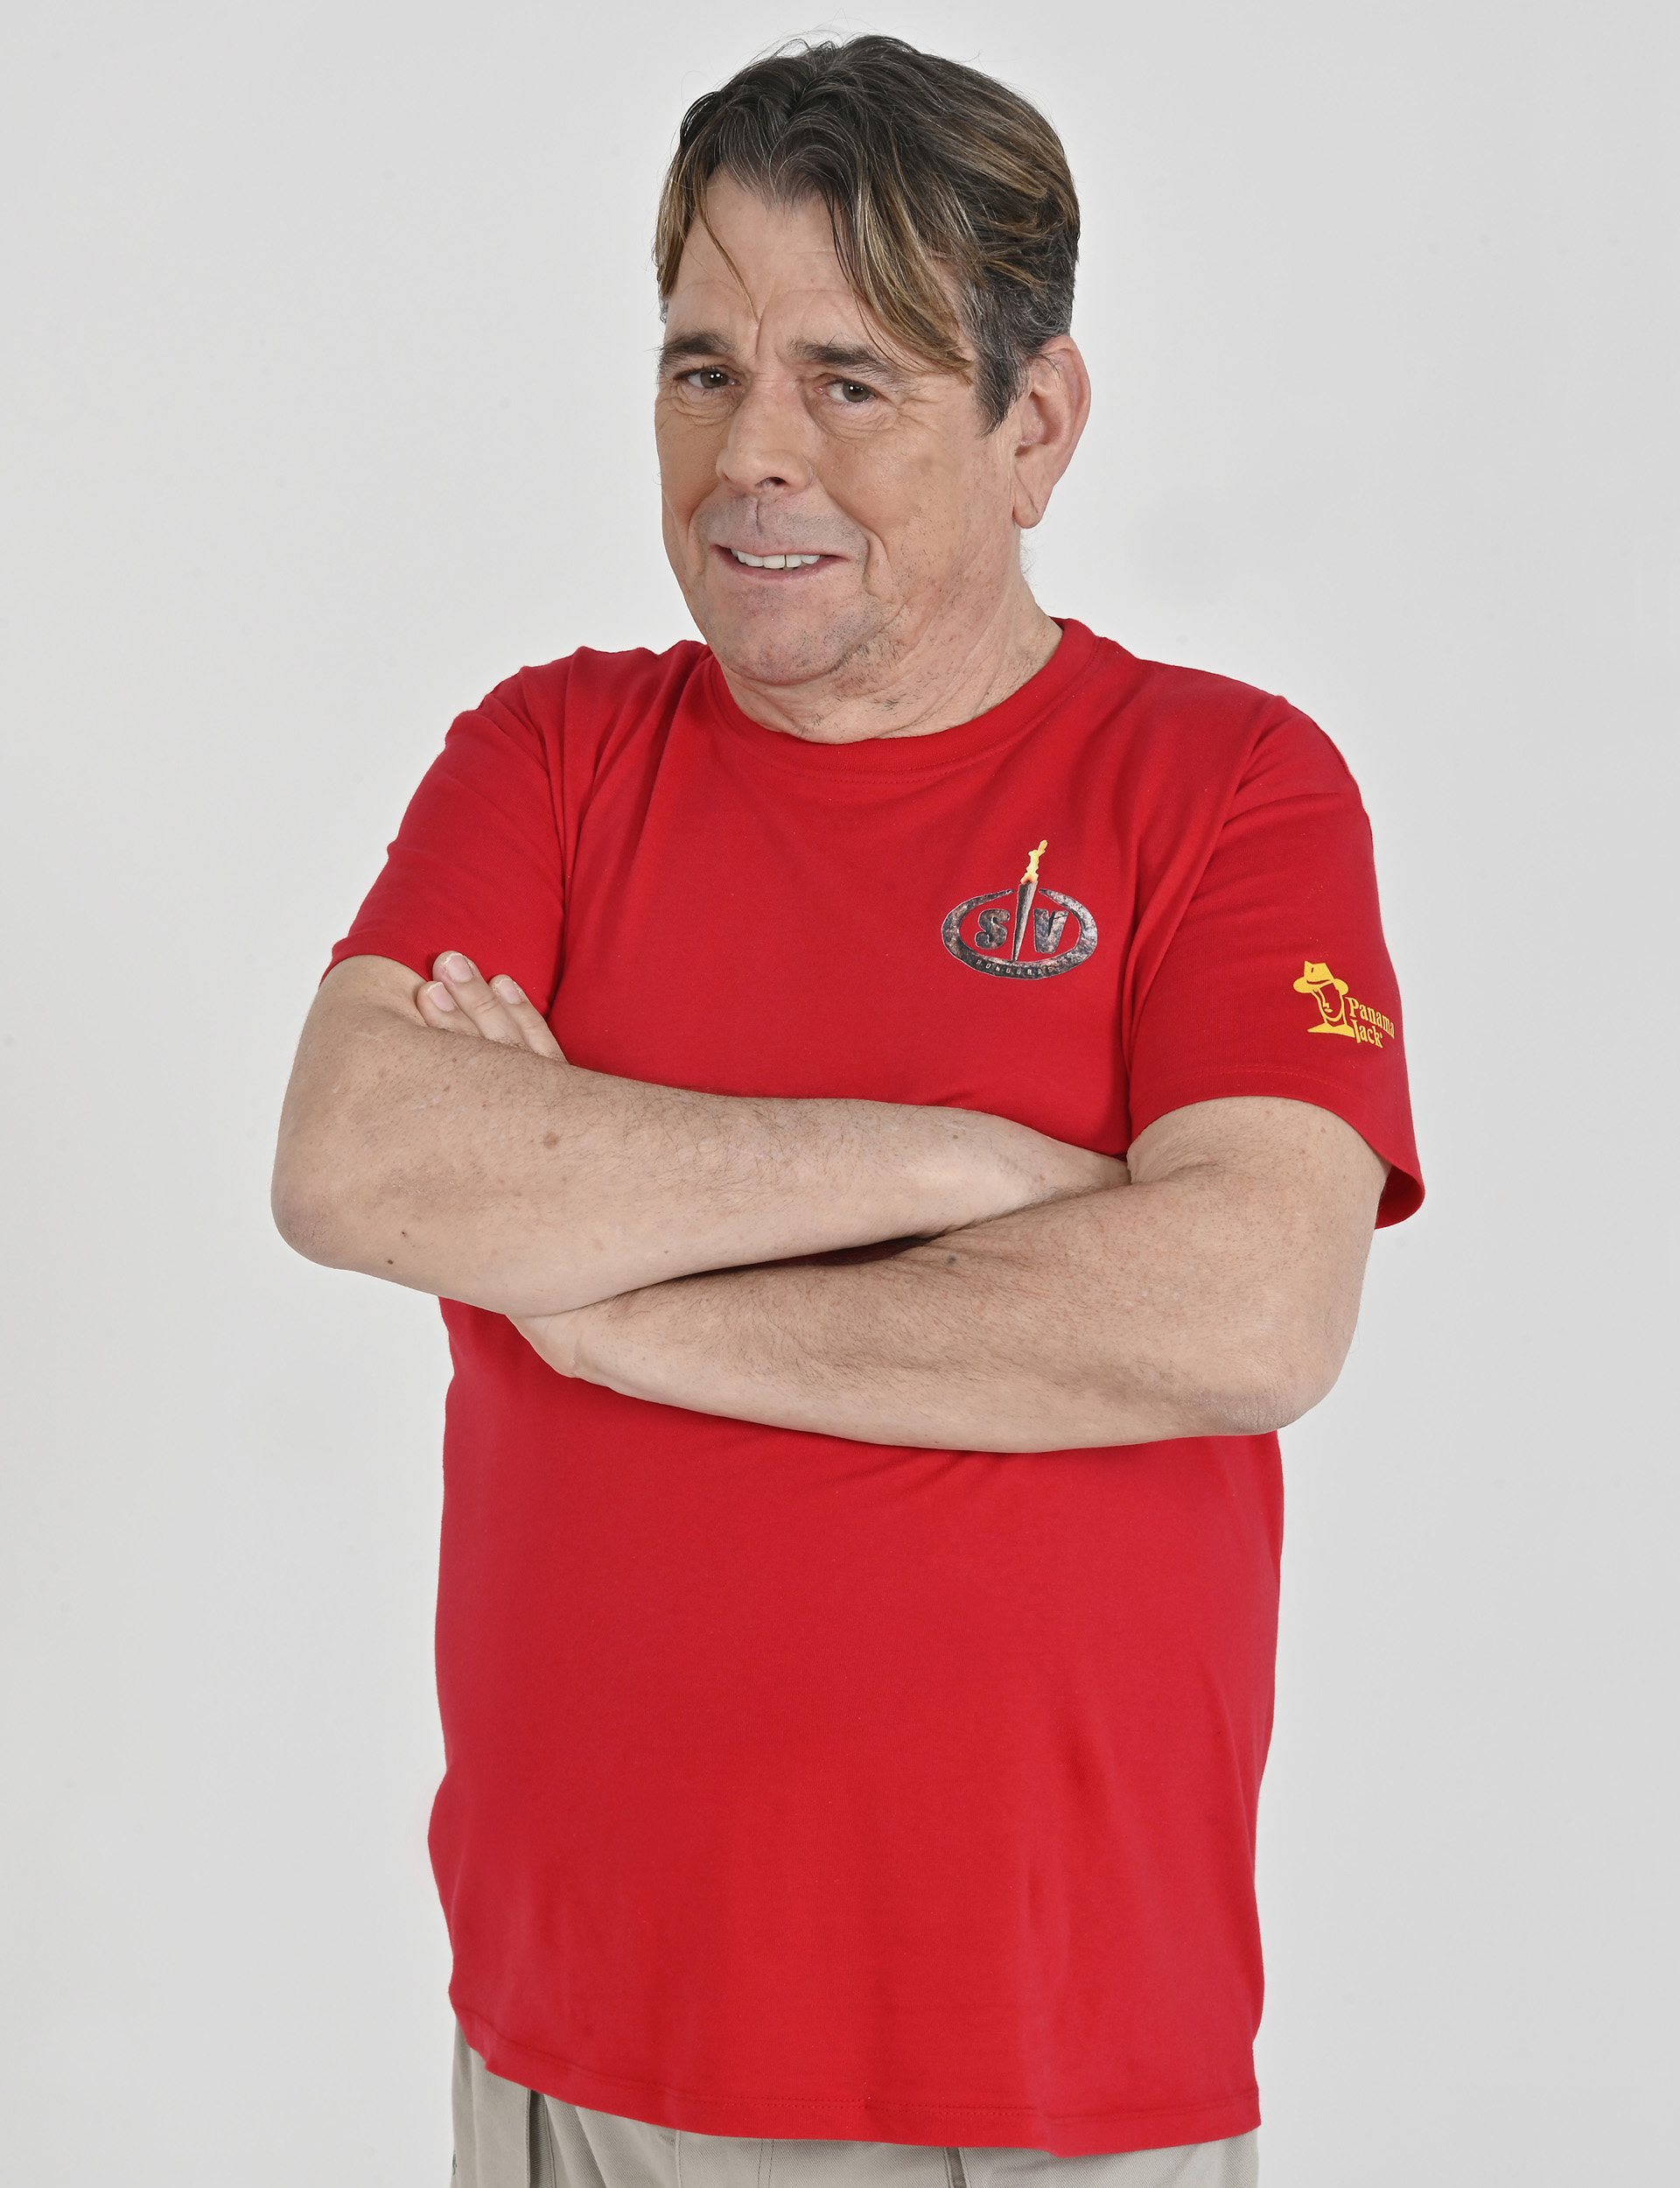 Juan Muñoz